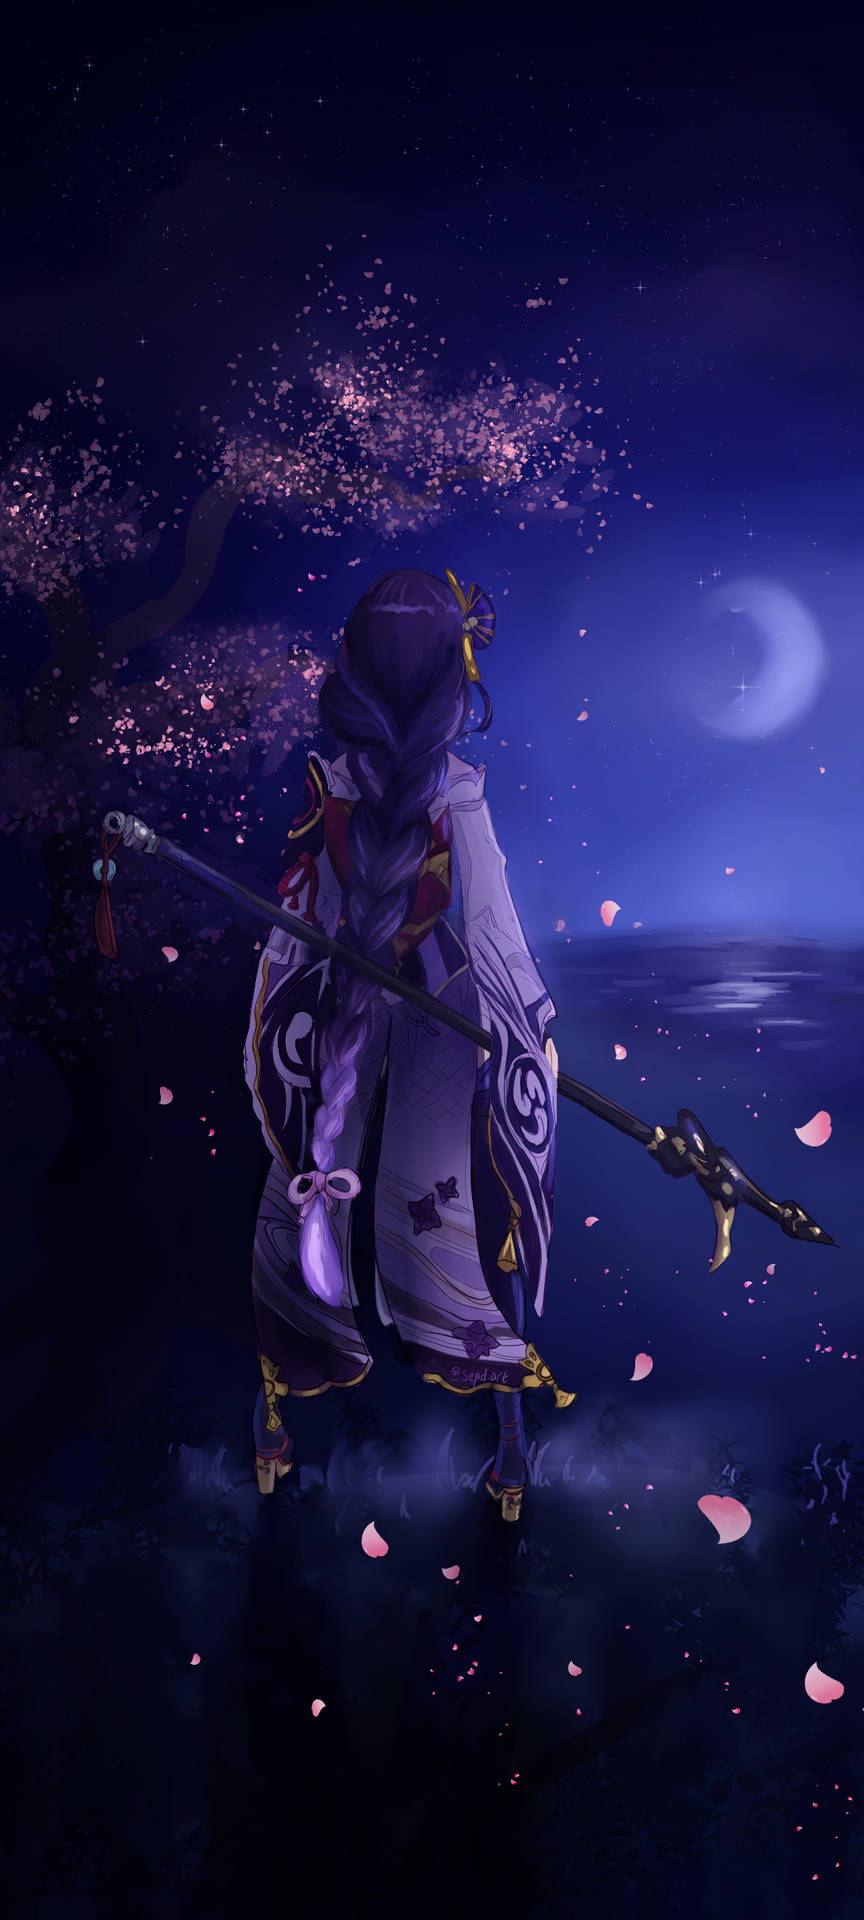 Raiden Shogun Starry Night Background